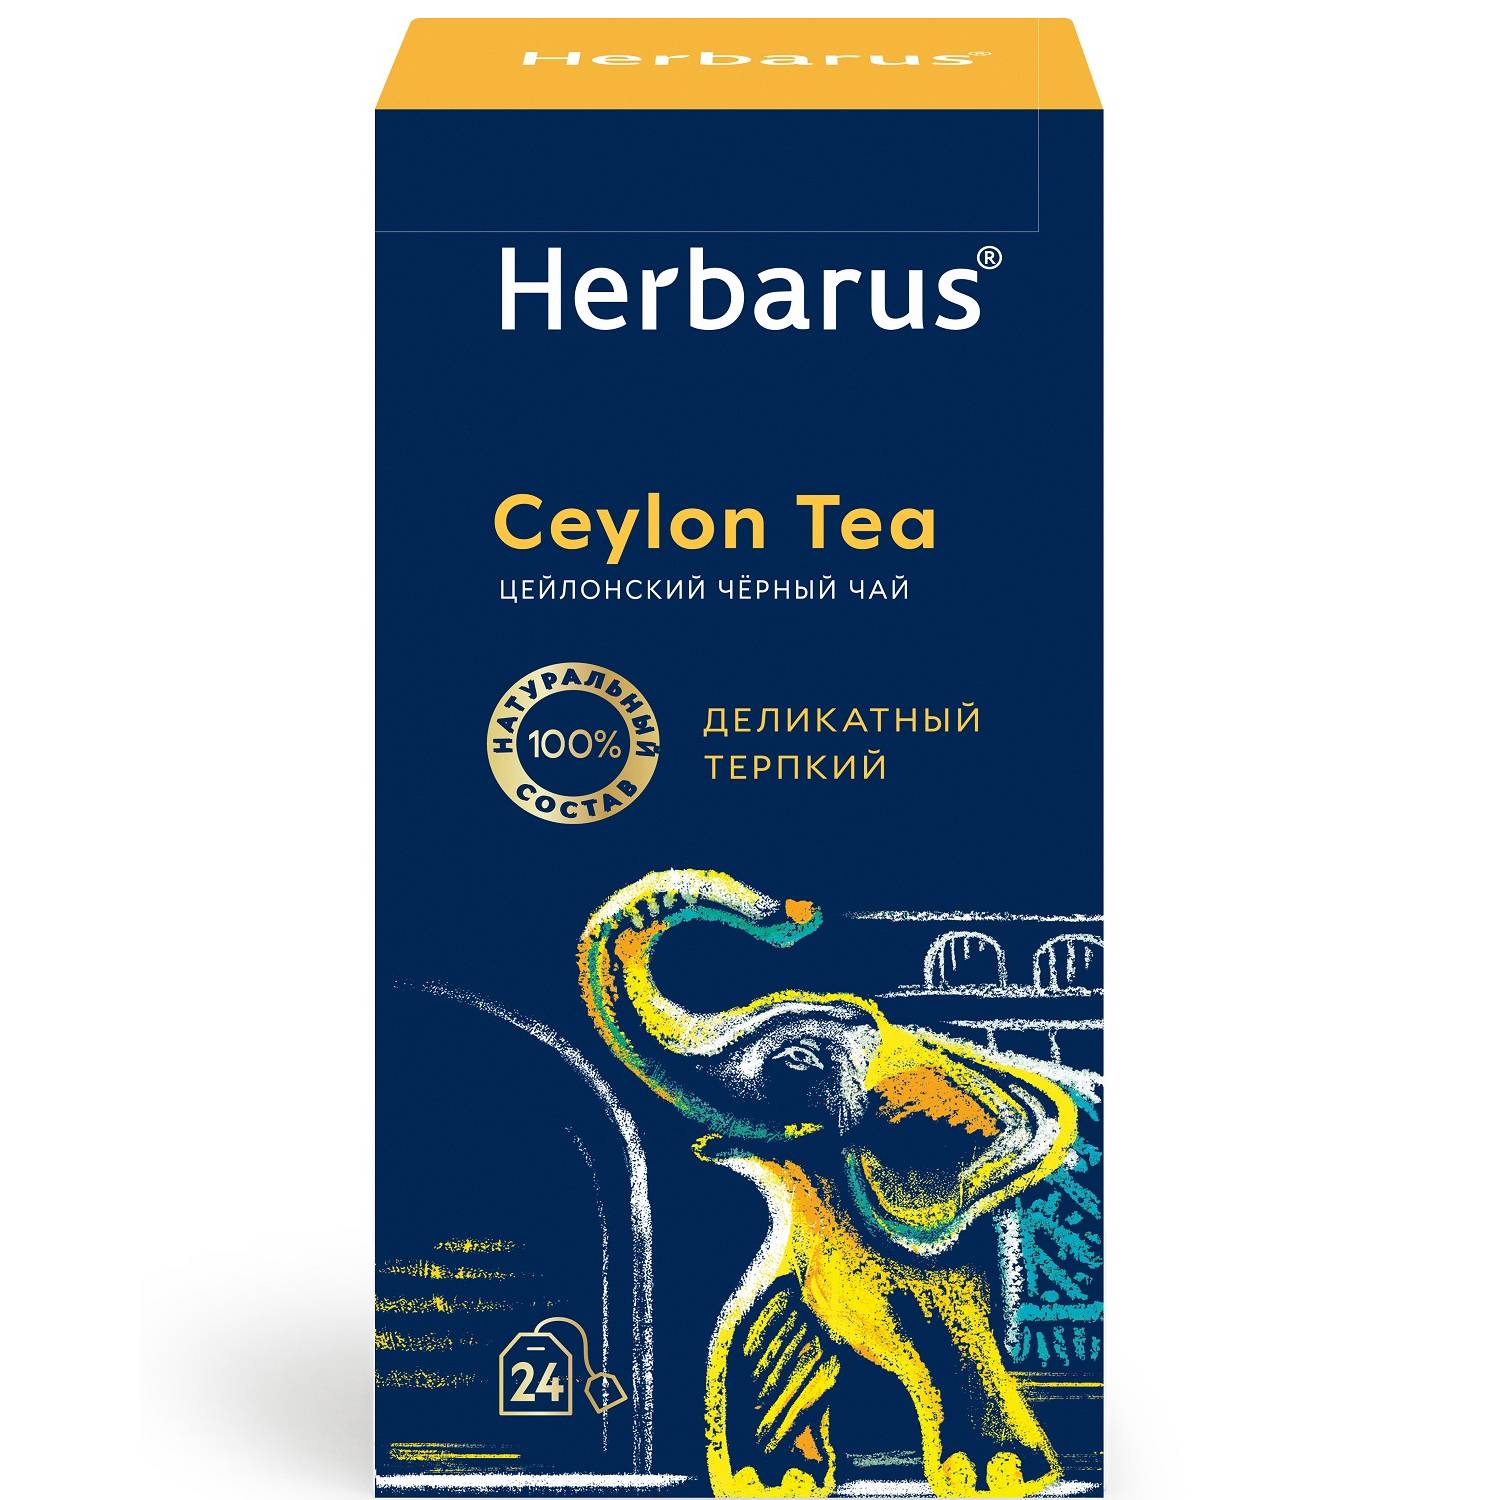 Herbarus Цейлонский черный чай Ceylon Tea, 24 пакетика х 2 г (Herbarus, Классический чай) чай травяной herbarus спелый ароматный 24 пакетиков